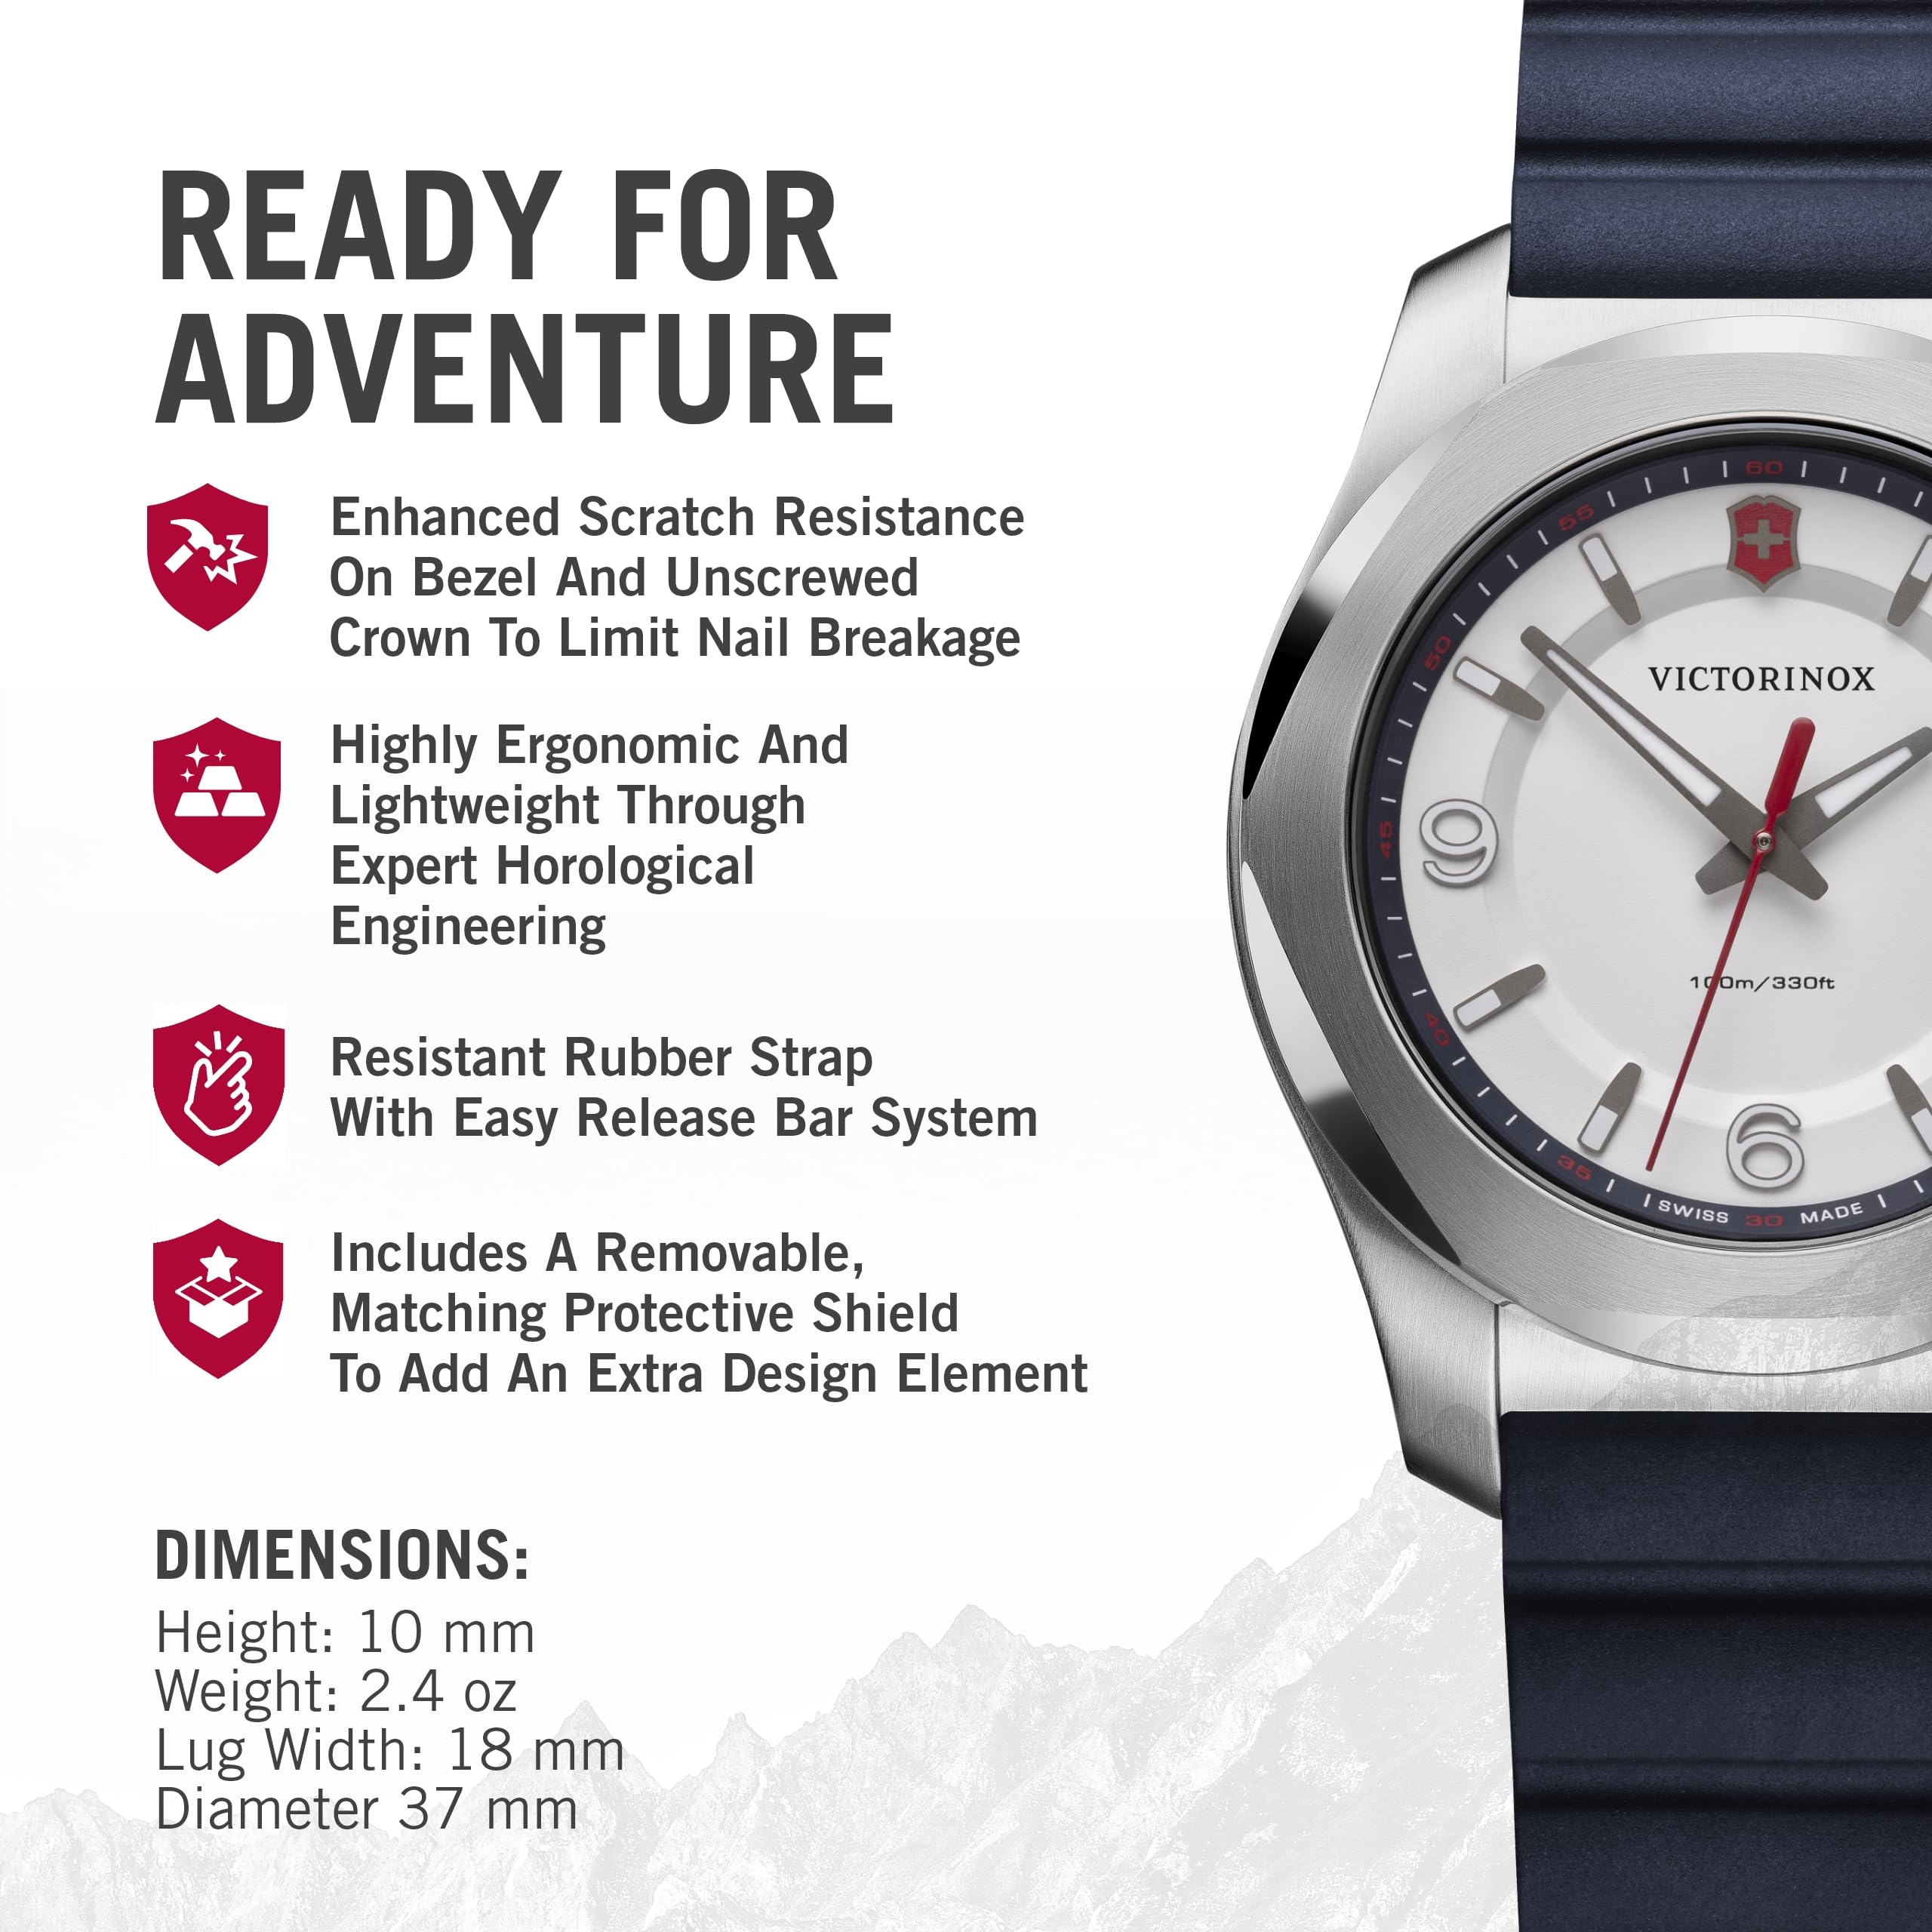 Victorinox Alliance I.N.O.X. V Analog Quartz Watch - Timeless Wristwatch